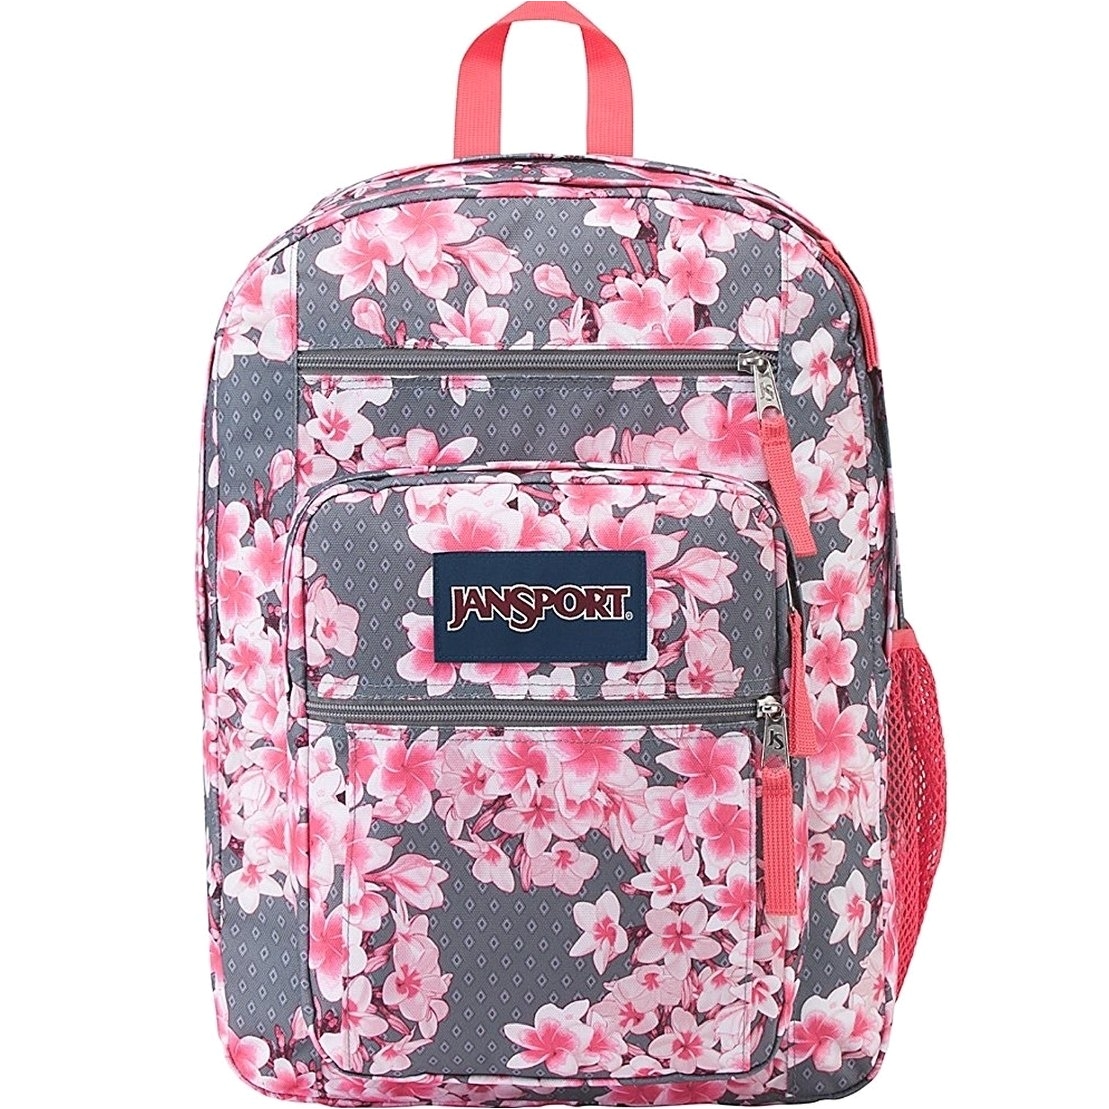 jansport backpack baby pink